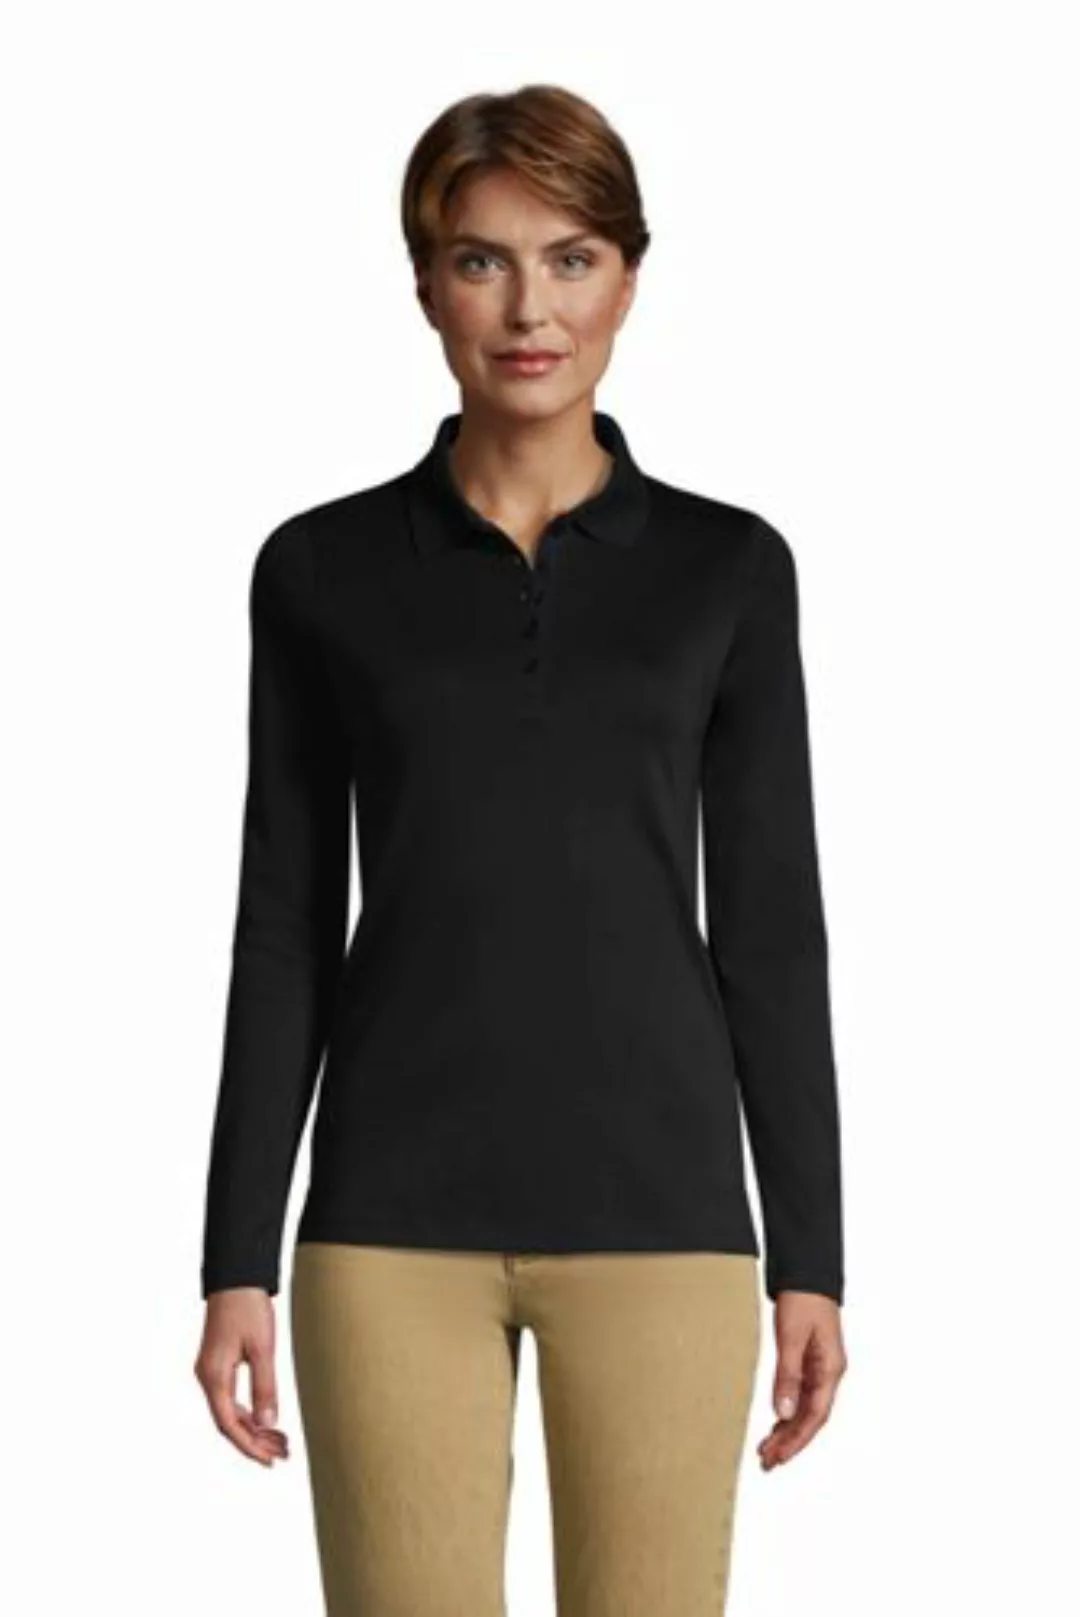 Supima-Poloshirt mit langen Ärmeln in Petite-Größe, Damen, Größe: L Petite, günstig online kaufen